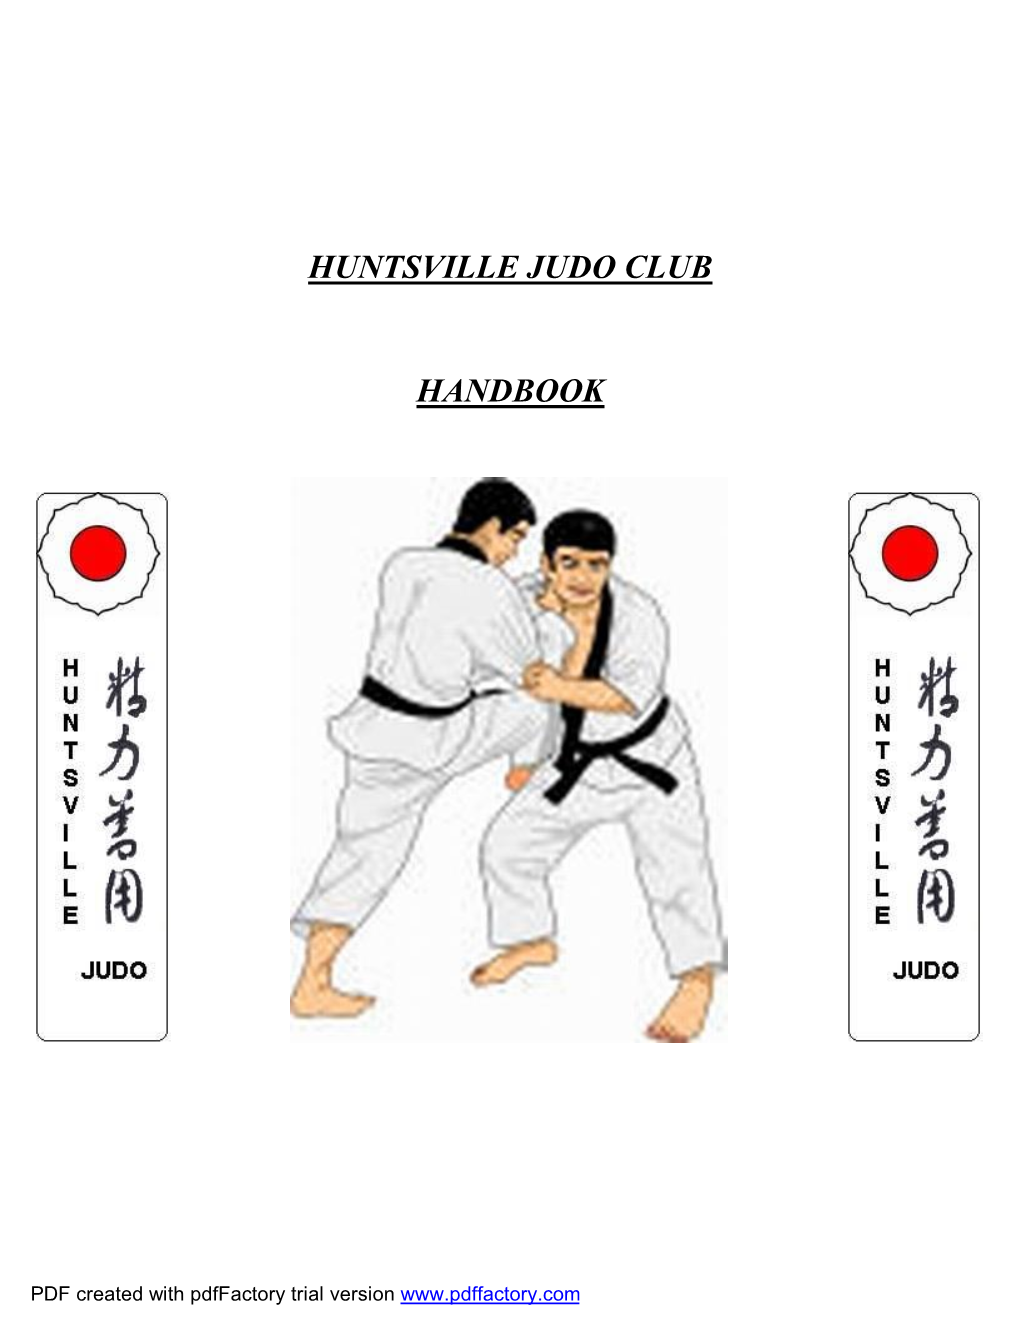 Huntsville Judo Club Handbook